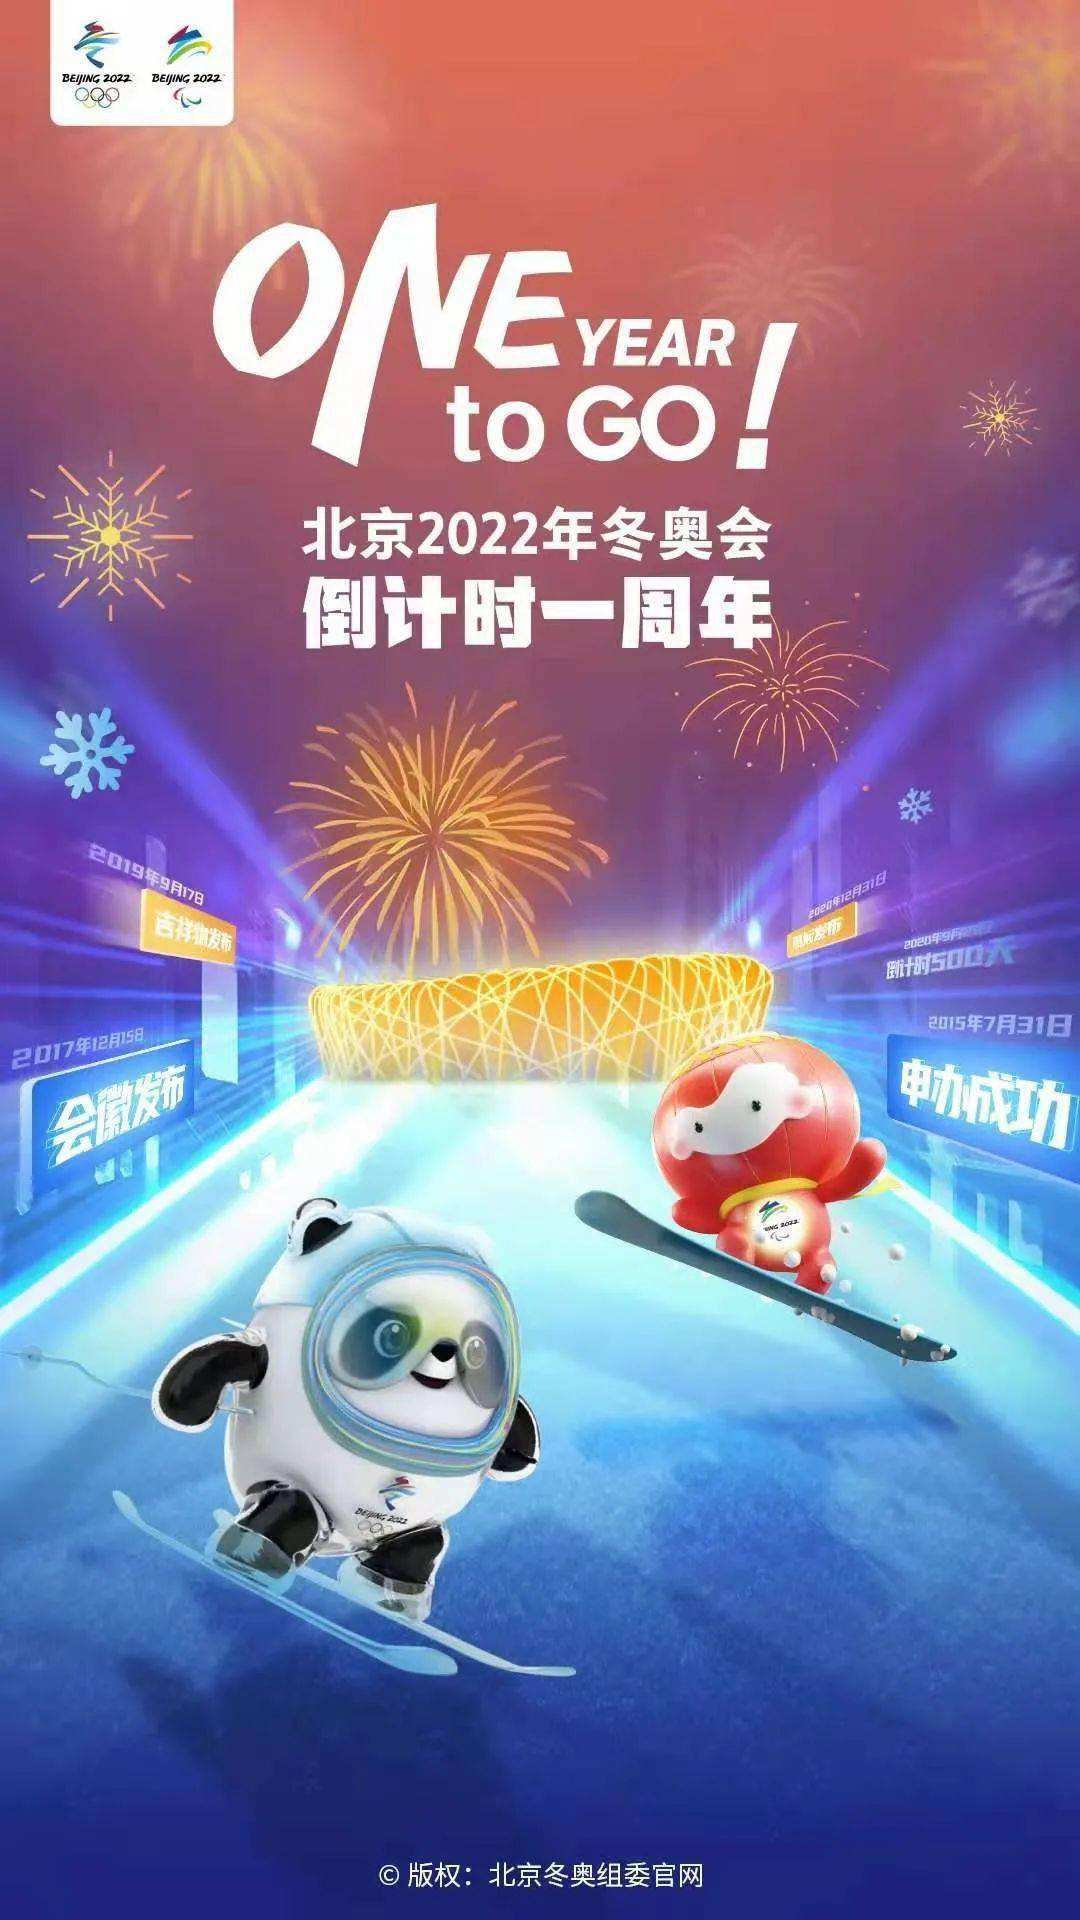 北京获得2022年冬奥会的举办权时间 北京获得2022年冬奥会的举办权时间是哪一年